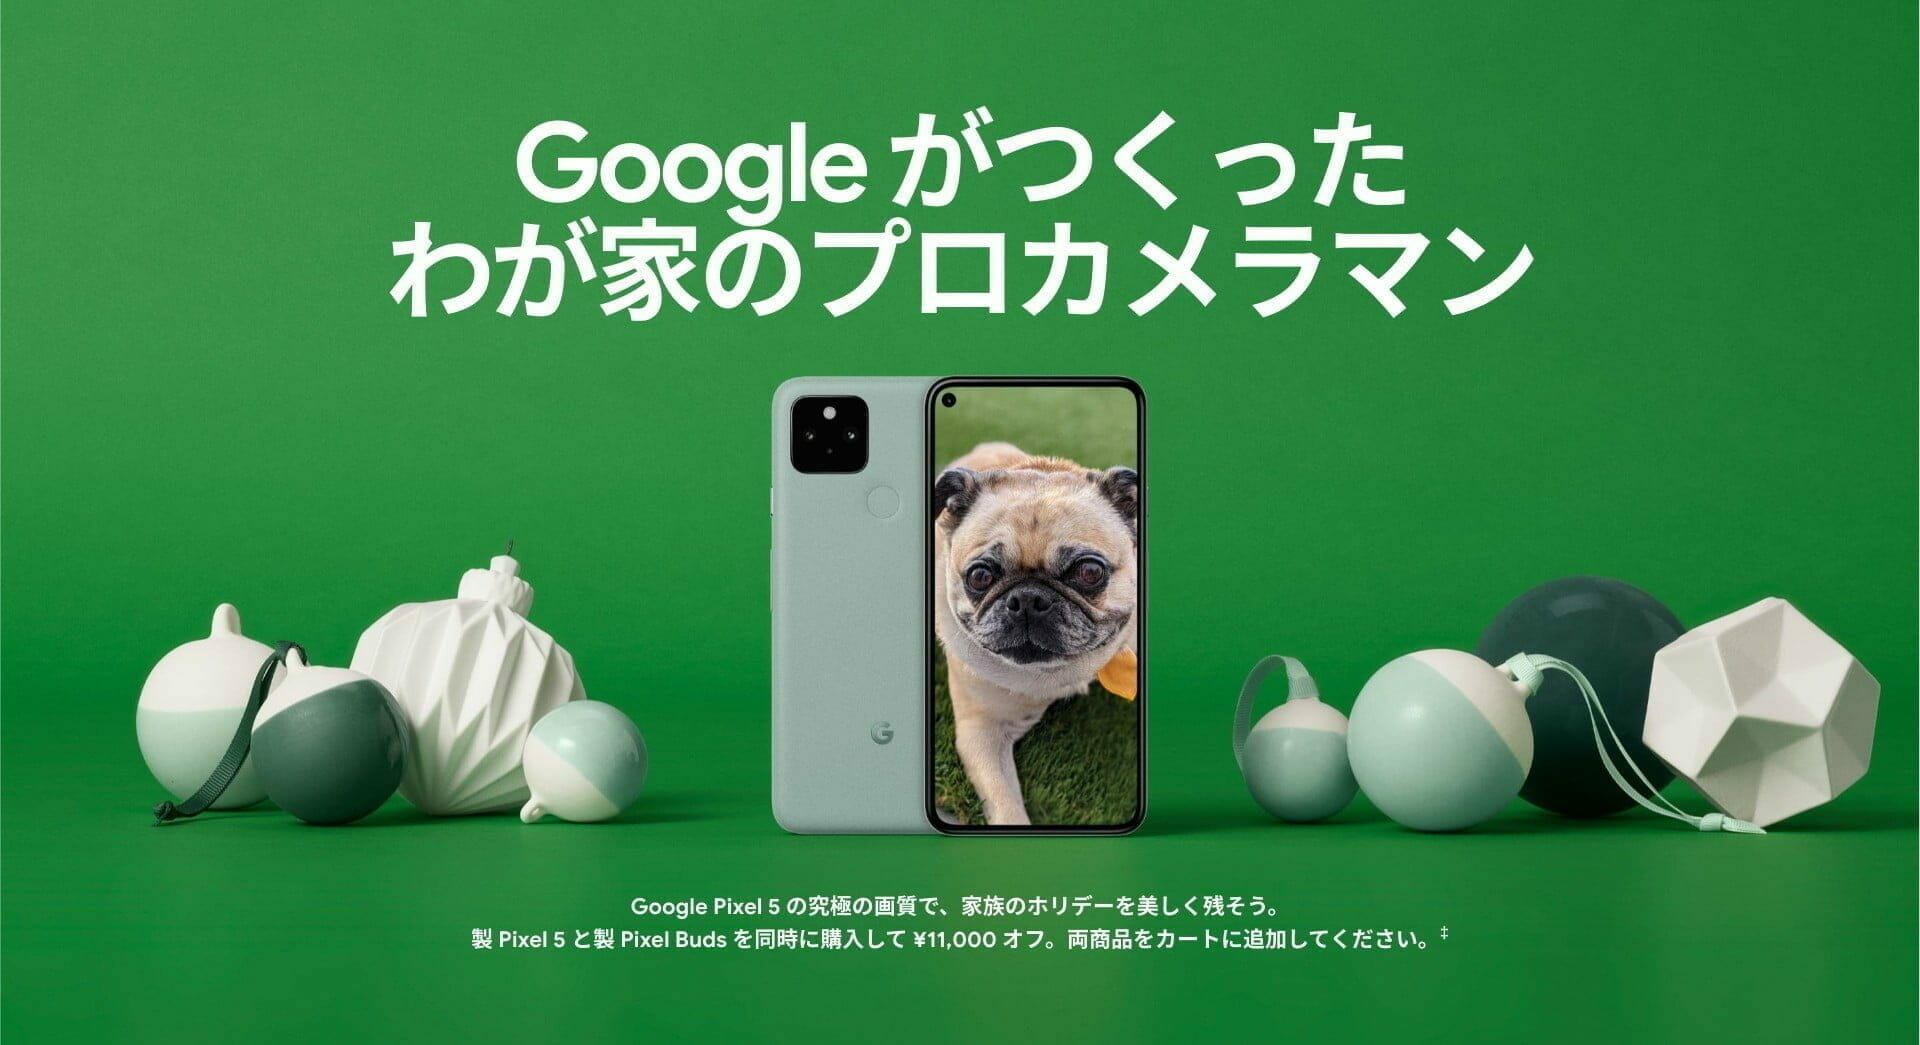 Google ホリデー デザイン：スマートフォン「Google Pixel 5」